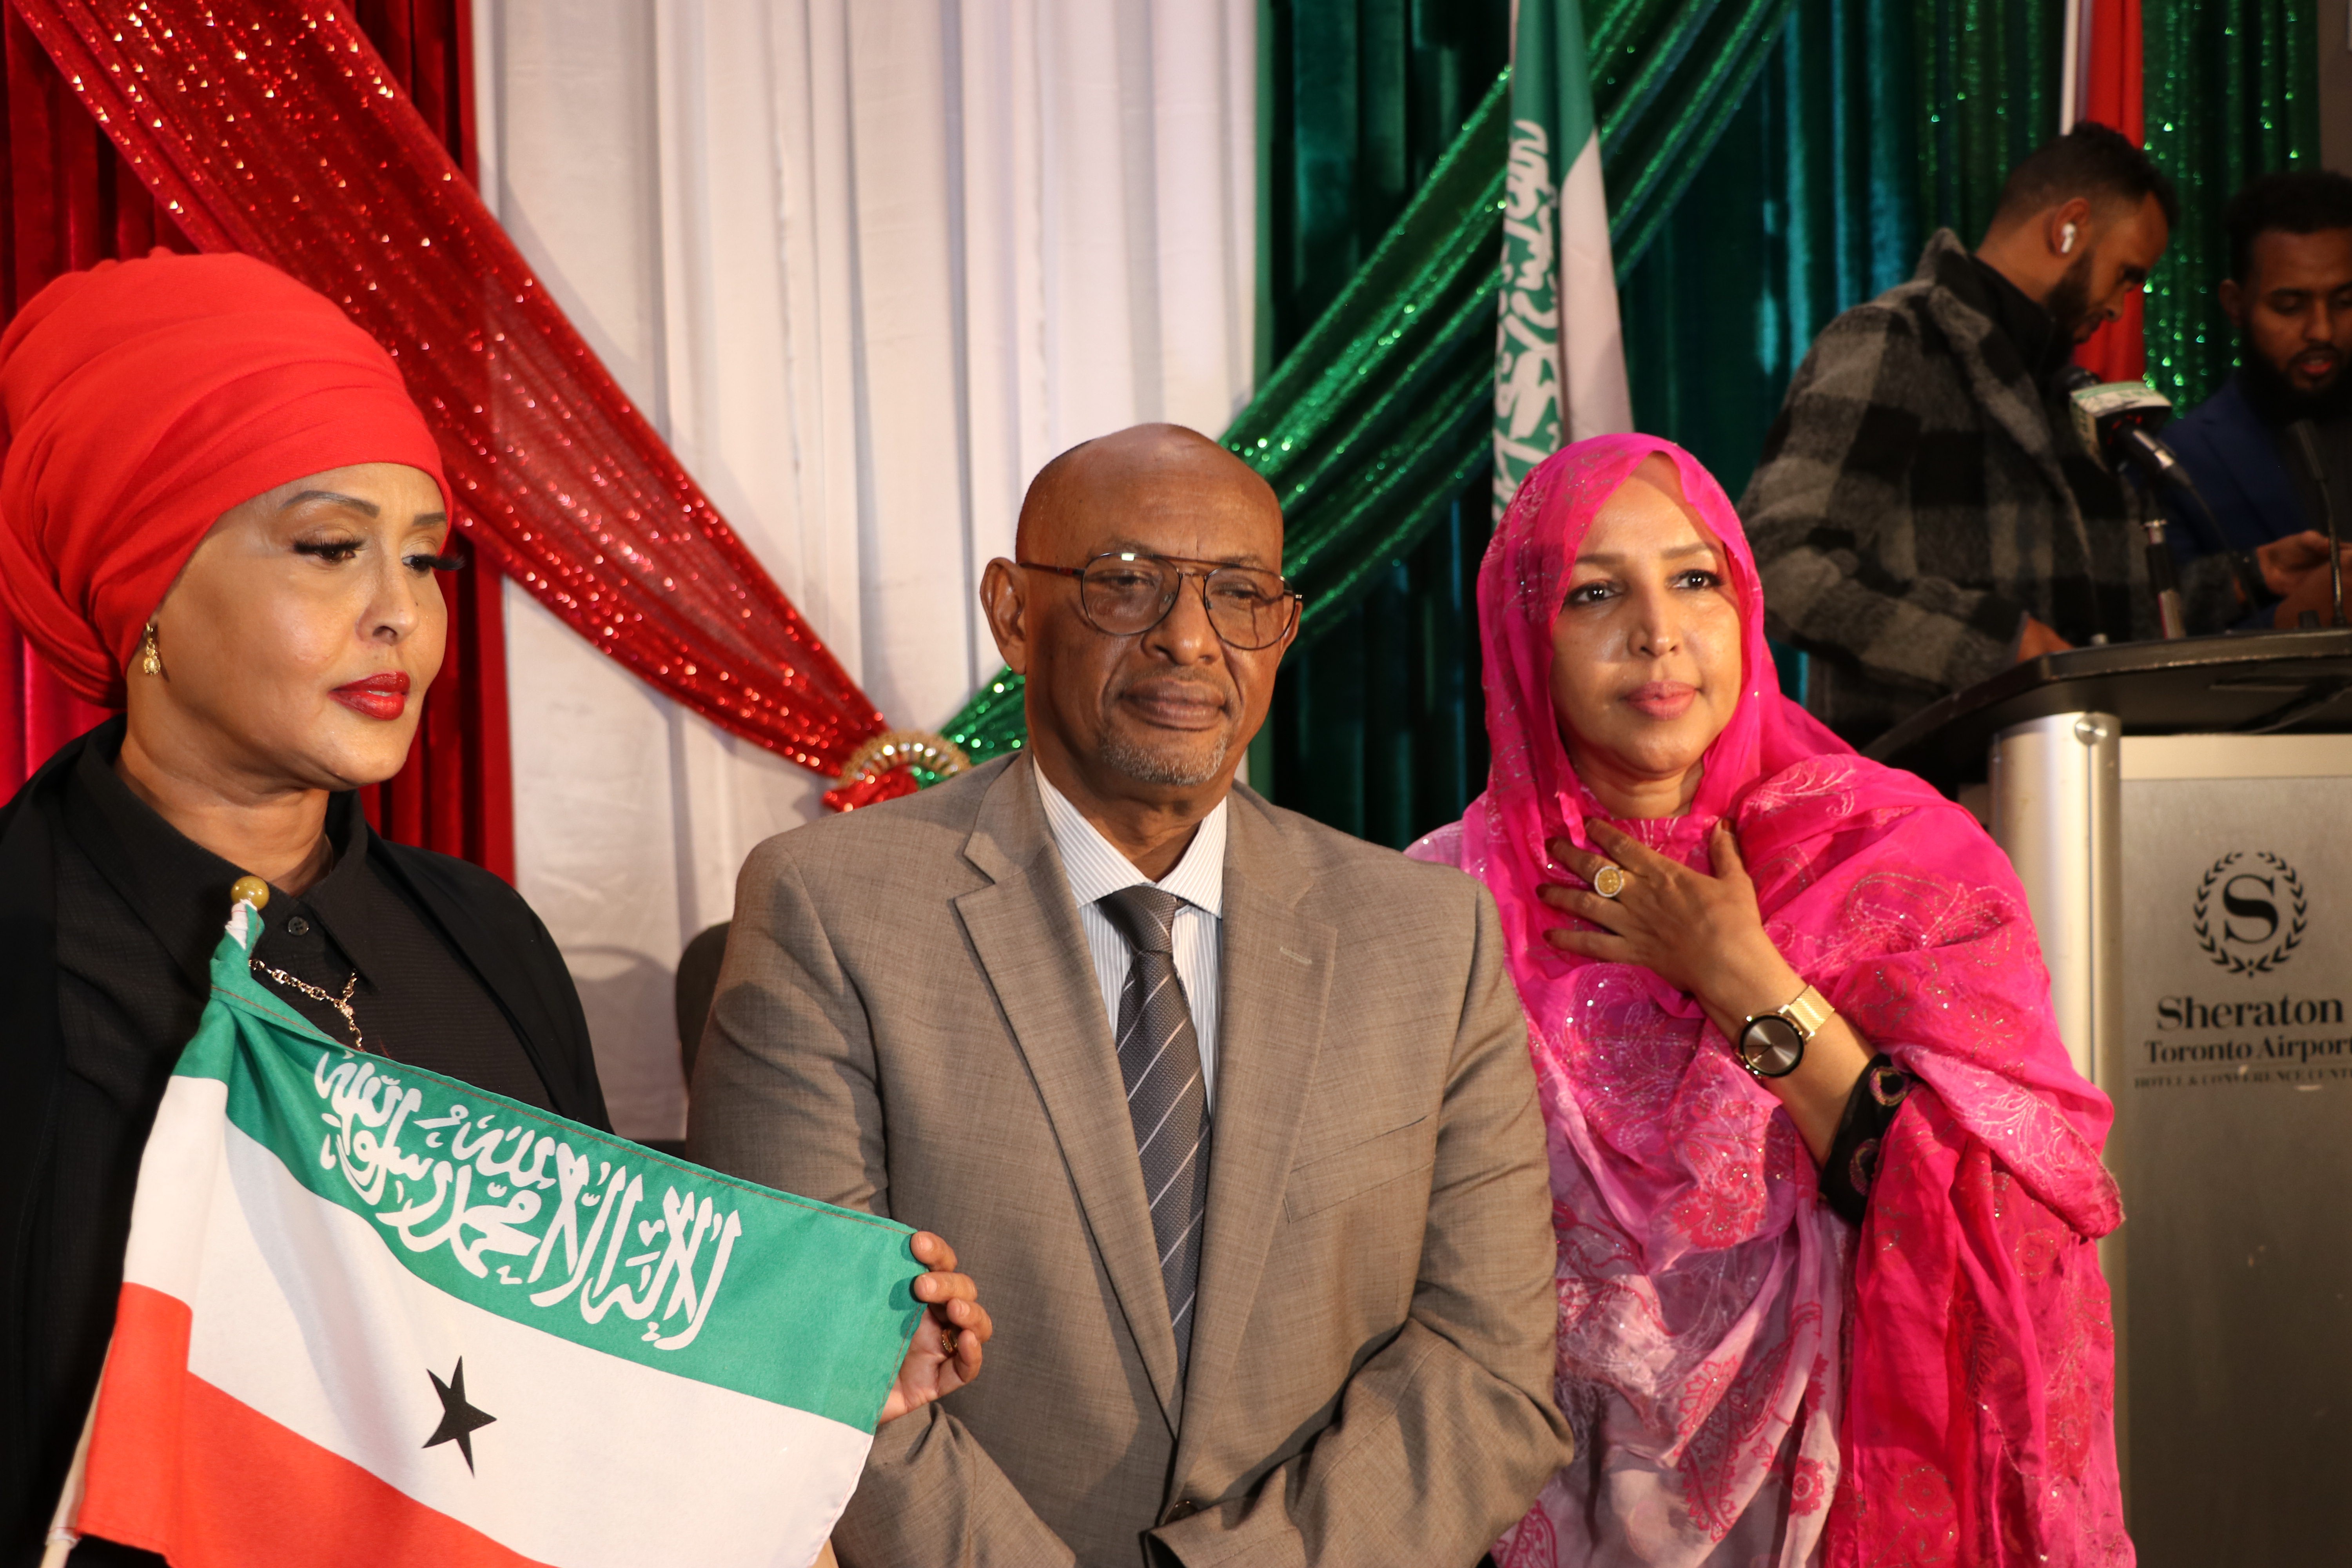 Wasiirka A.Dibadda Somaliland Dr.Ciise Keyd oo lakulmey Jaliyadda Toronto DAAWO SAWIRO